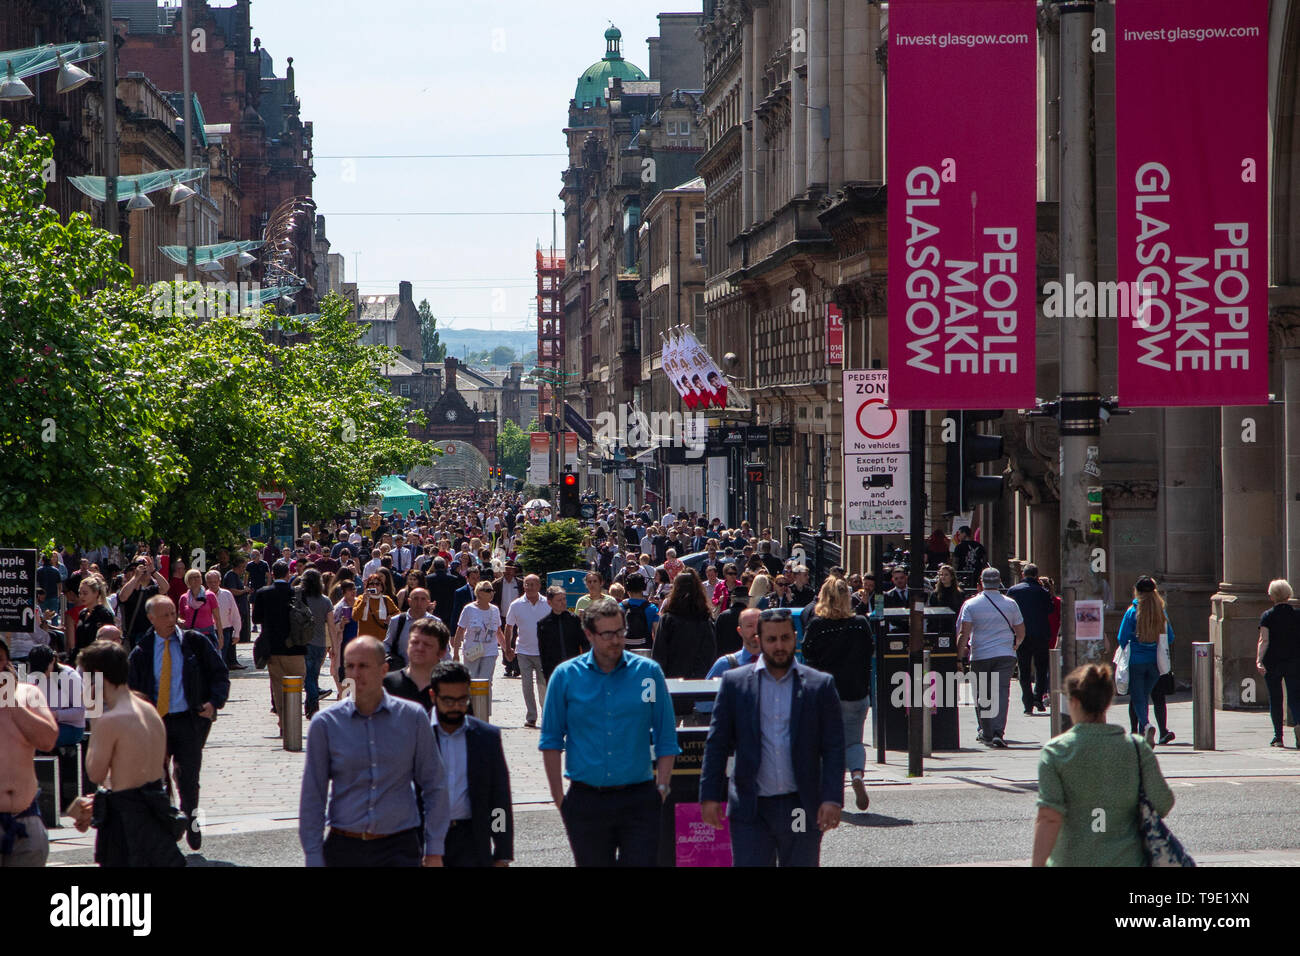 Una vista sopra il cenotafio alla città in slogan pubblicitario dal 2013, "Le persone fanno Glasgow' Foto Stock